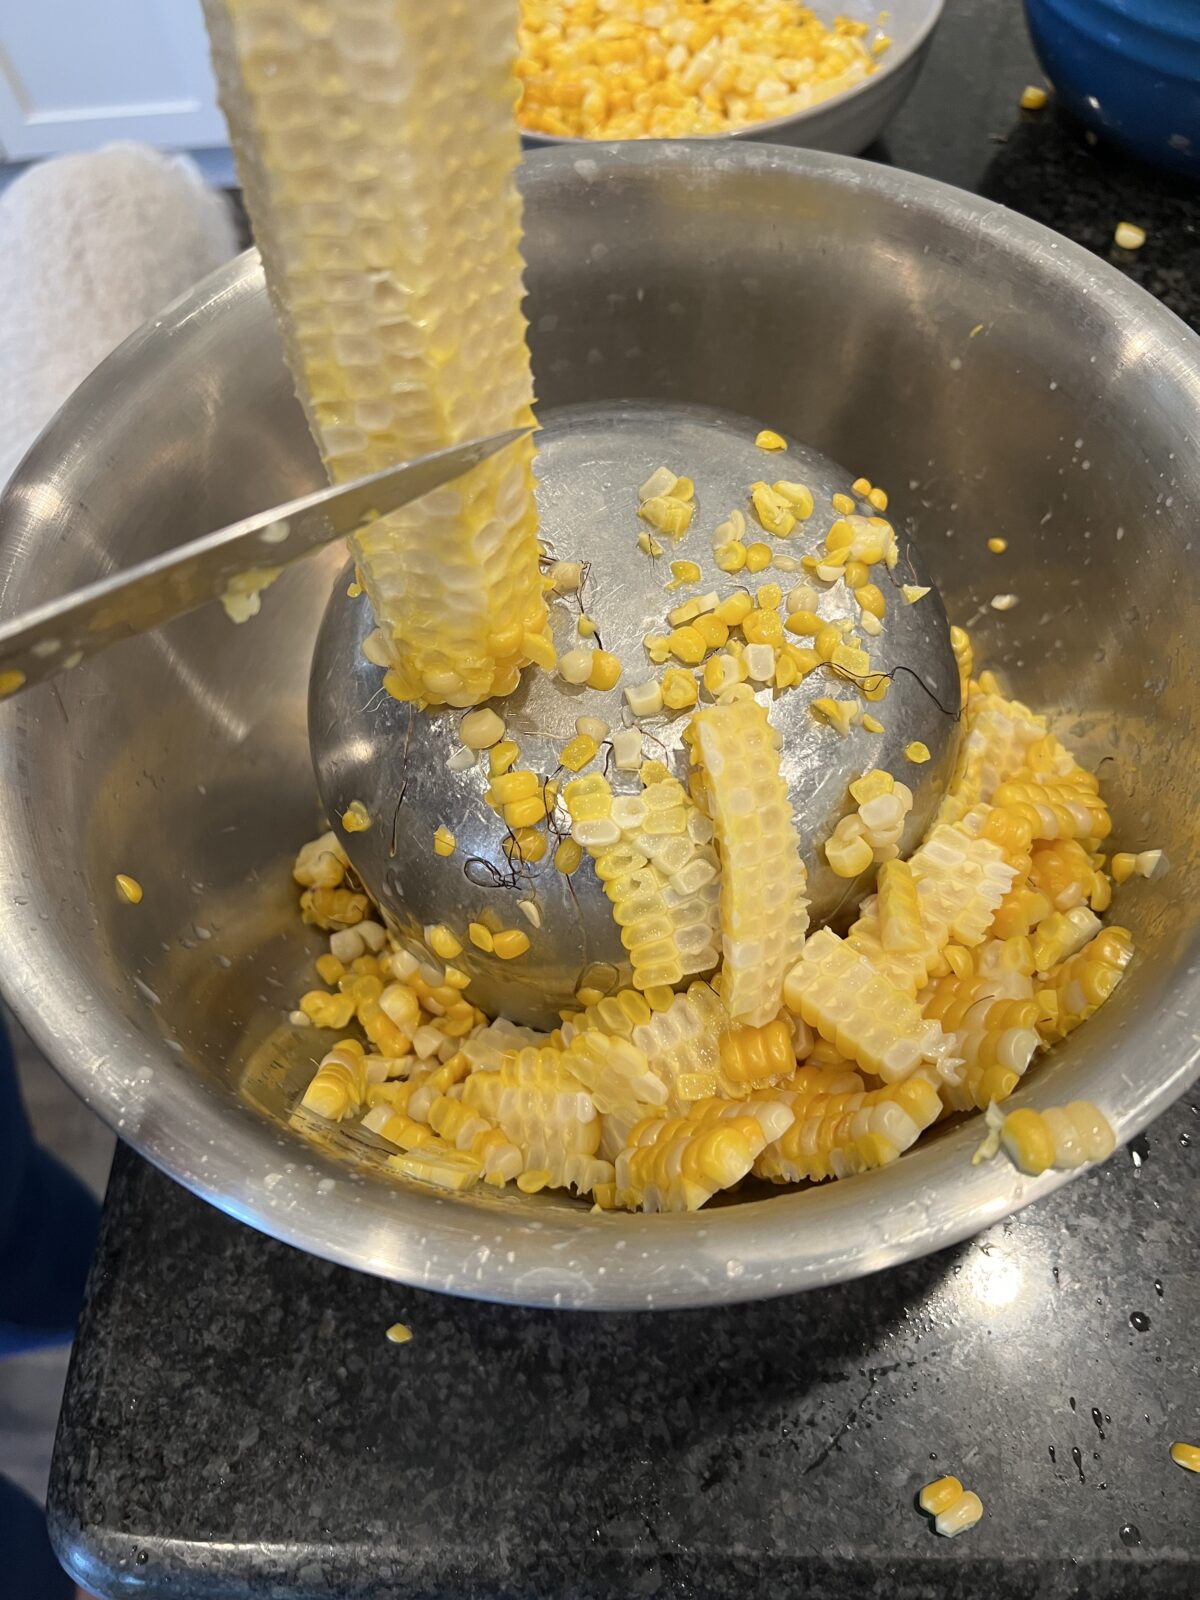 A handy way to cut corn off the cob